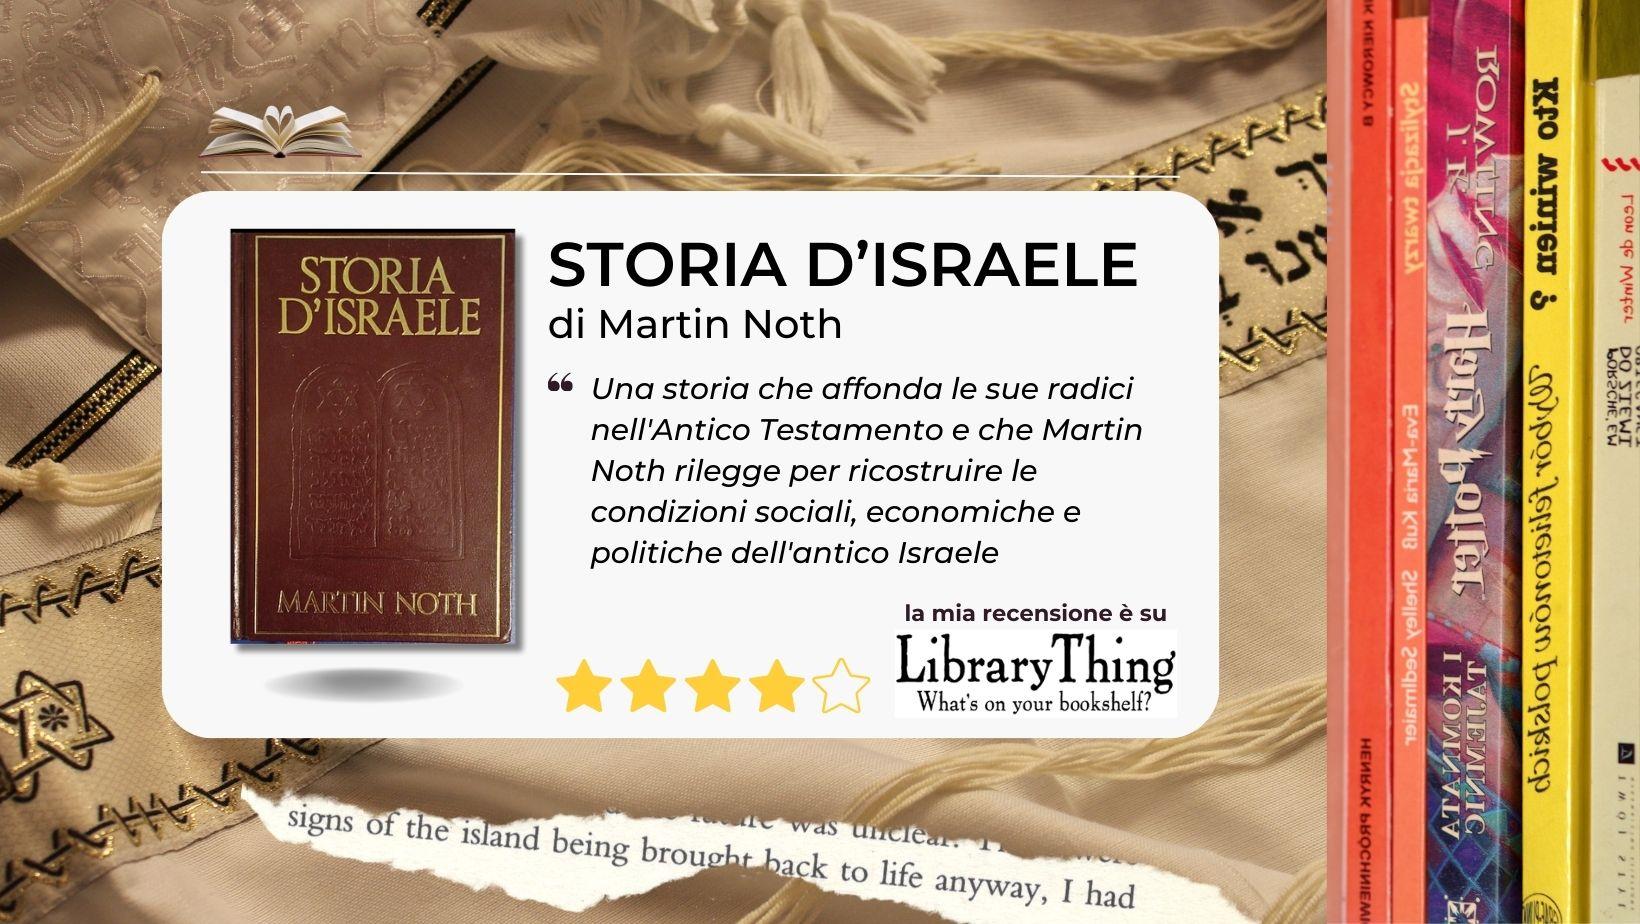 Le radici bibliche della Storia di Israele di Martin Noth. Un altro punto di osservazione.